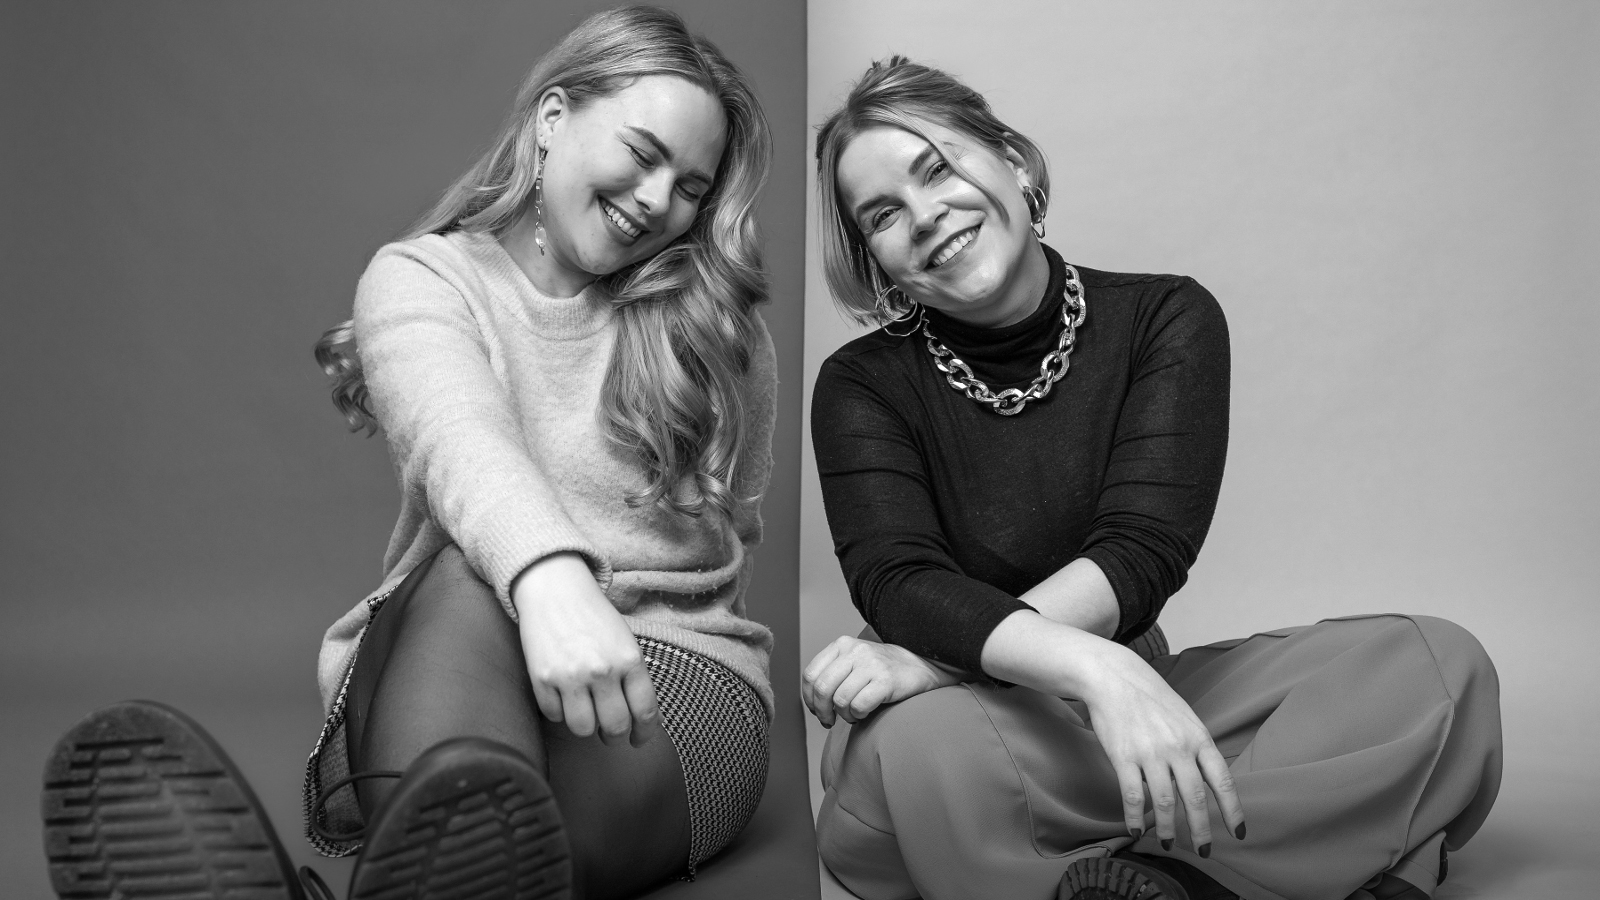 Kuvassa ovat vasemmalla Laura Wathén ja oikealla Katri Ylinen eri kuvissa istumassa lattialla iloisilla ilmeillä. Kuva on musta-valkoinen.